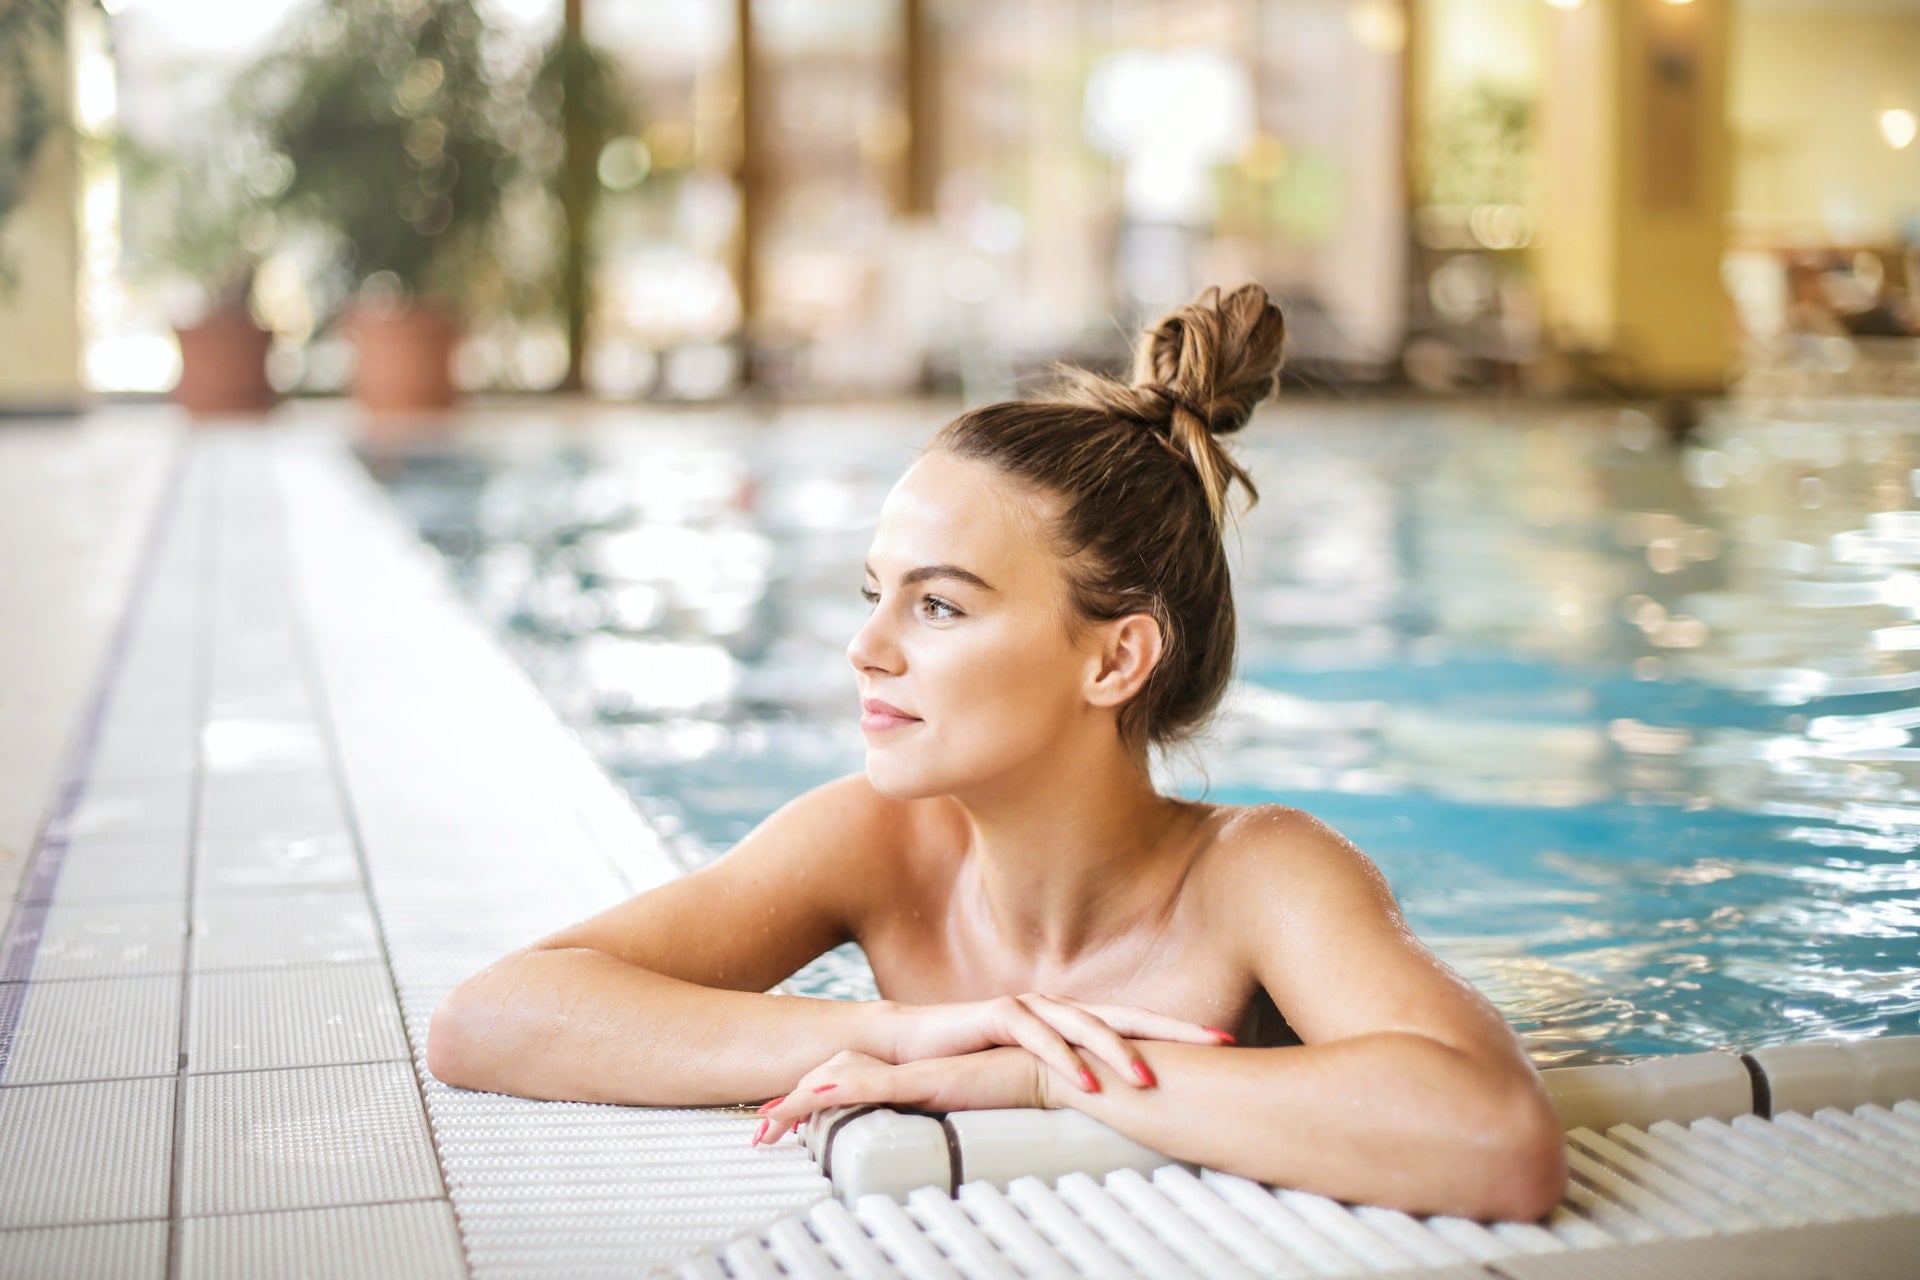 mulher na borda da piscina com um coque no cabelo olhando para o lado